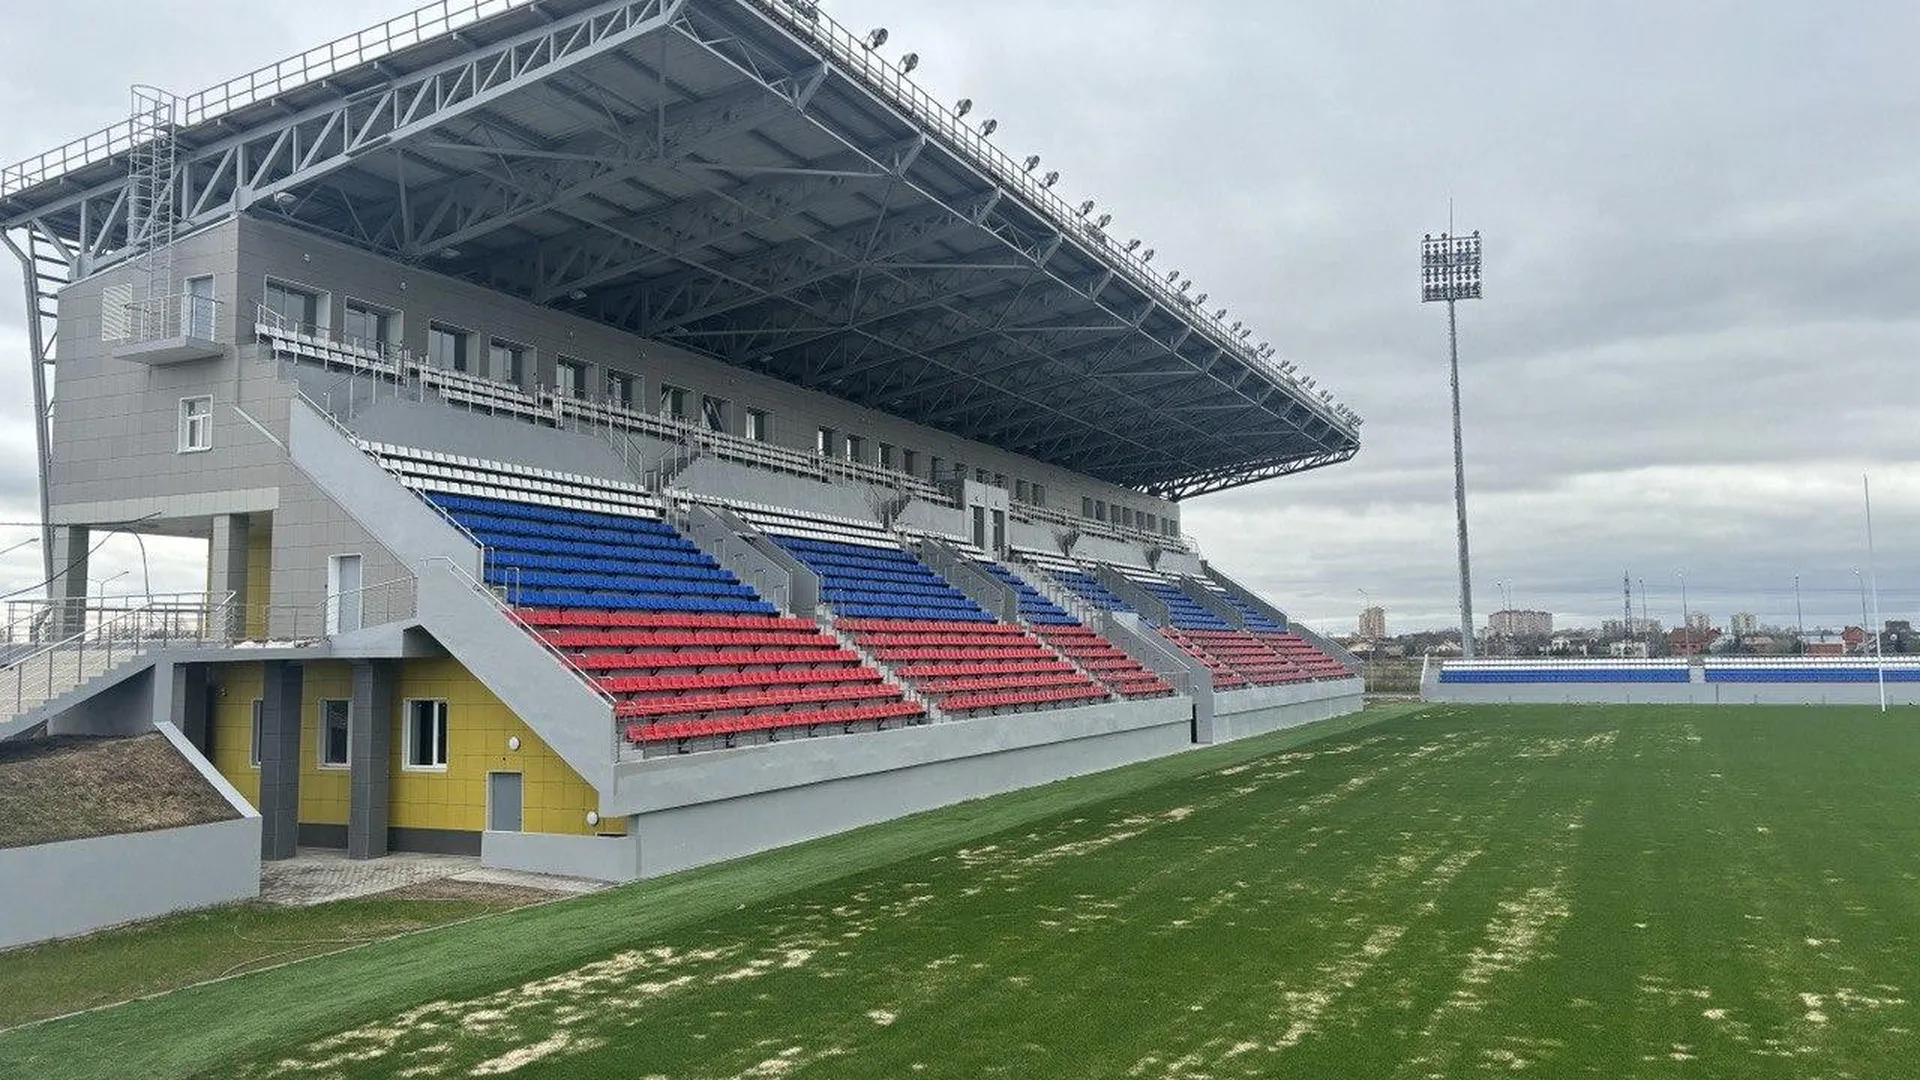 Стадион для игры в регби в Щелкове построят к лету